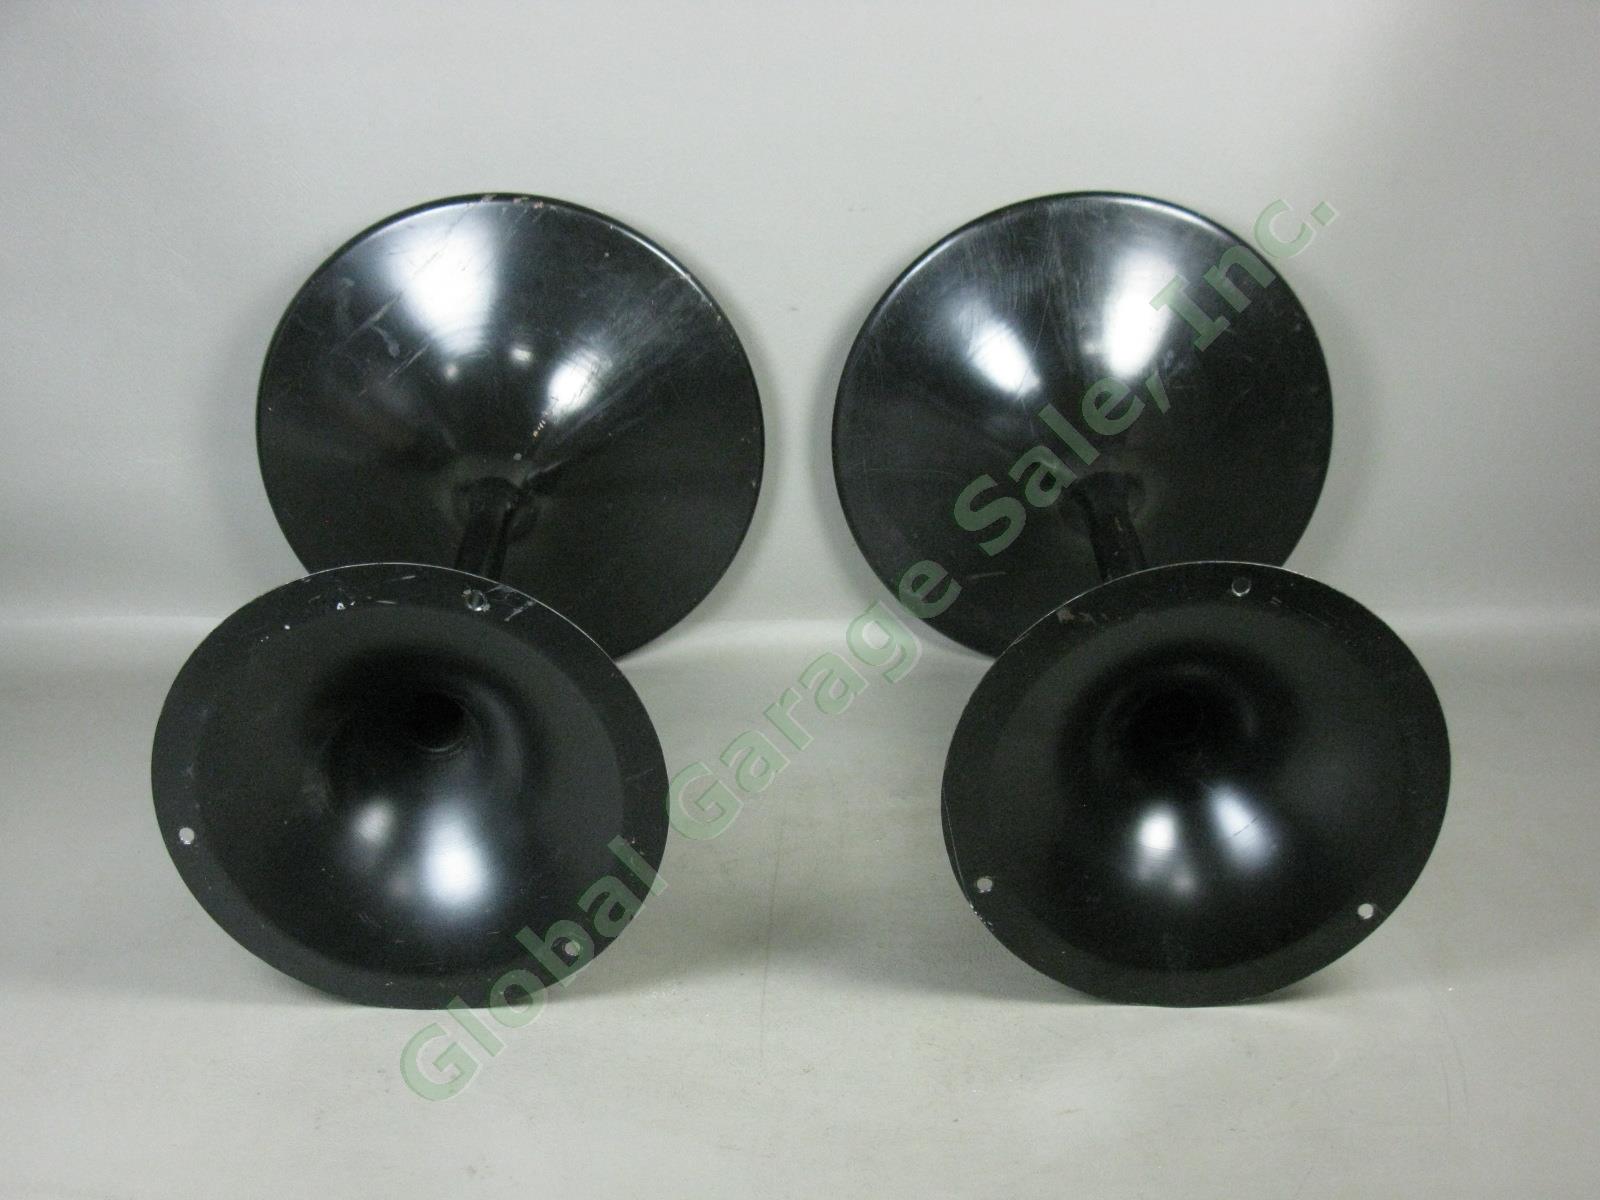 Bose 901 Black Tulip Speaker Pedestal Stands 3 Screw Holes Series II One Owner 1